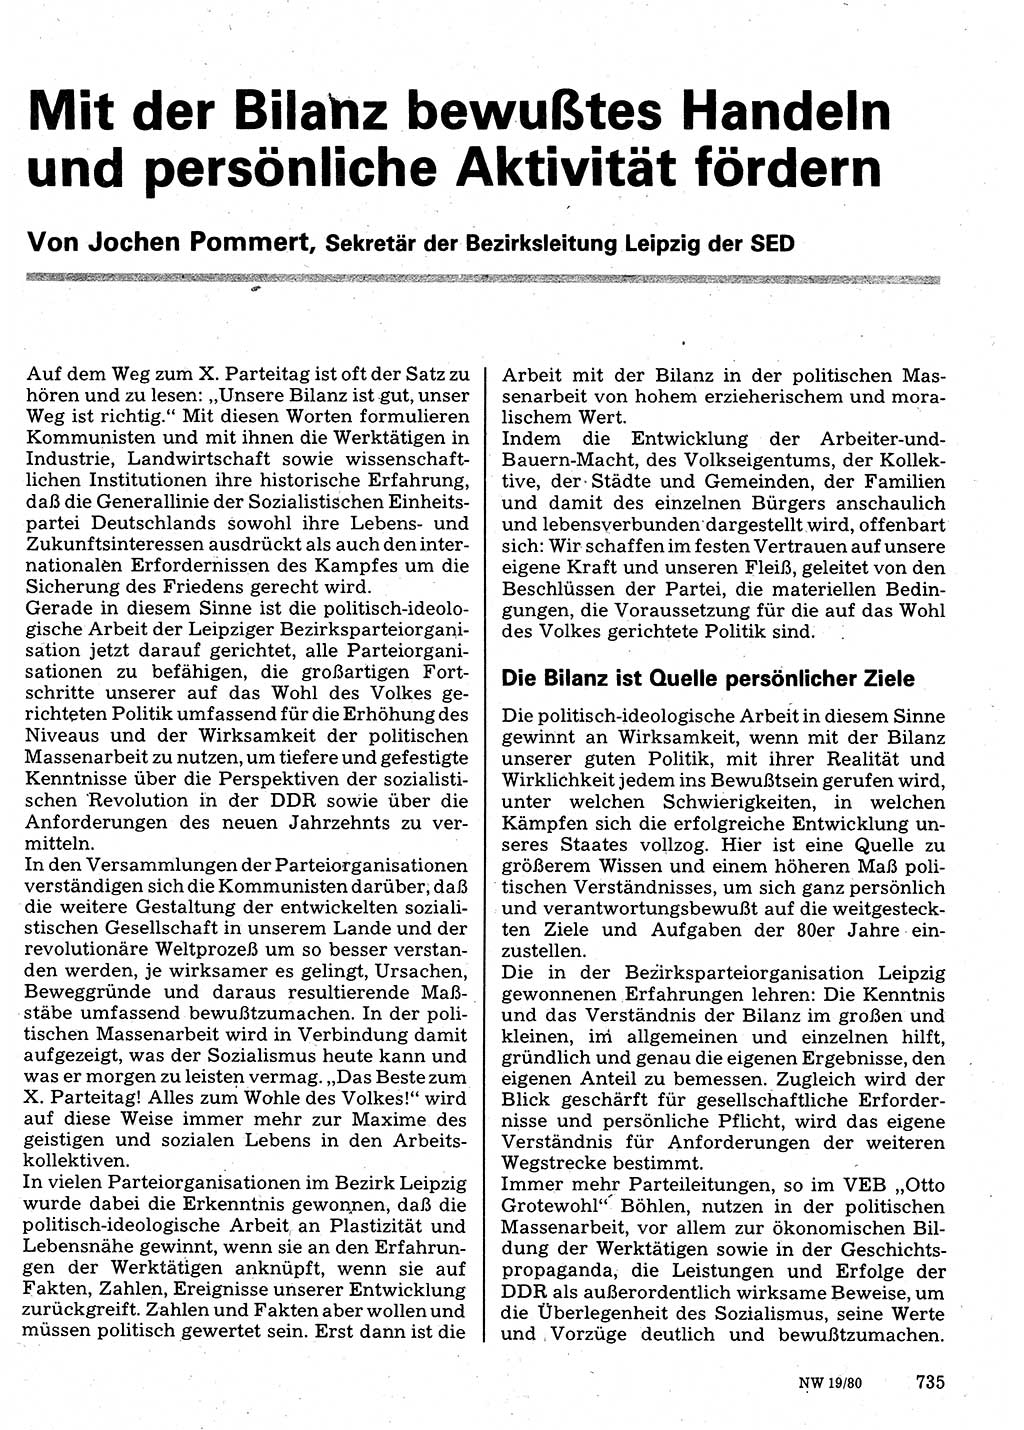 Neuer Weg (NW), Organ des Zentralkomitees (ZK) der SED (Sozialistische Einheitspartei Deutschlands) für Fragen des Parteilebens, 35. Jahrgang [Deutsche Demokratische Republik (DDR)] 1980, Seite 735 (NW ZK SED DDR 1980, S. 735)